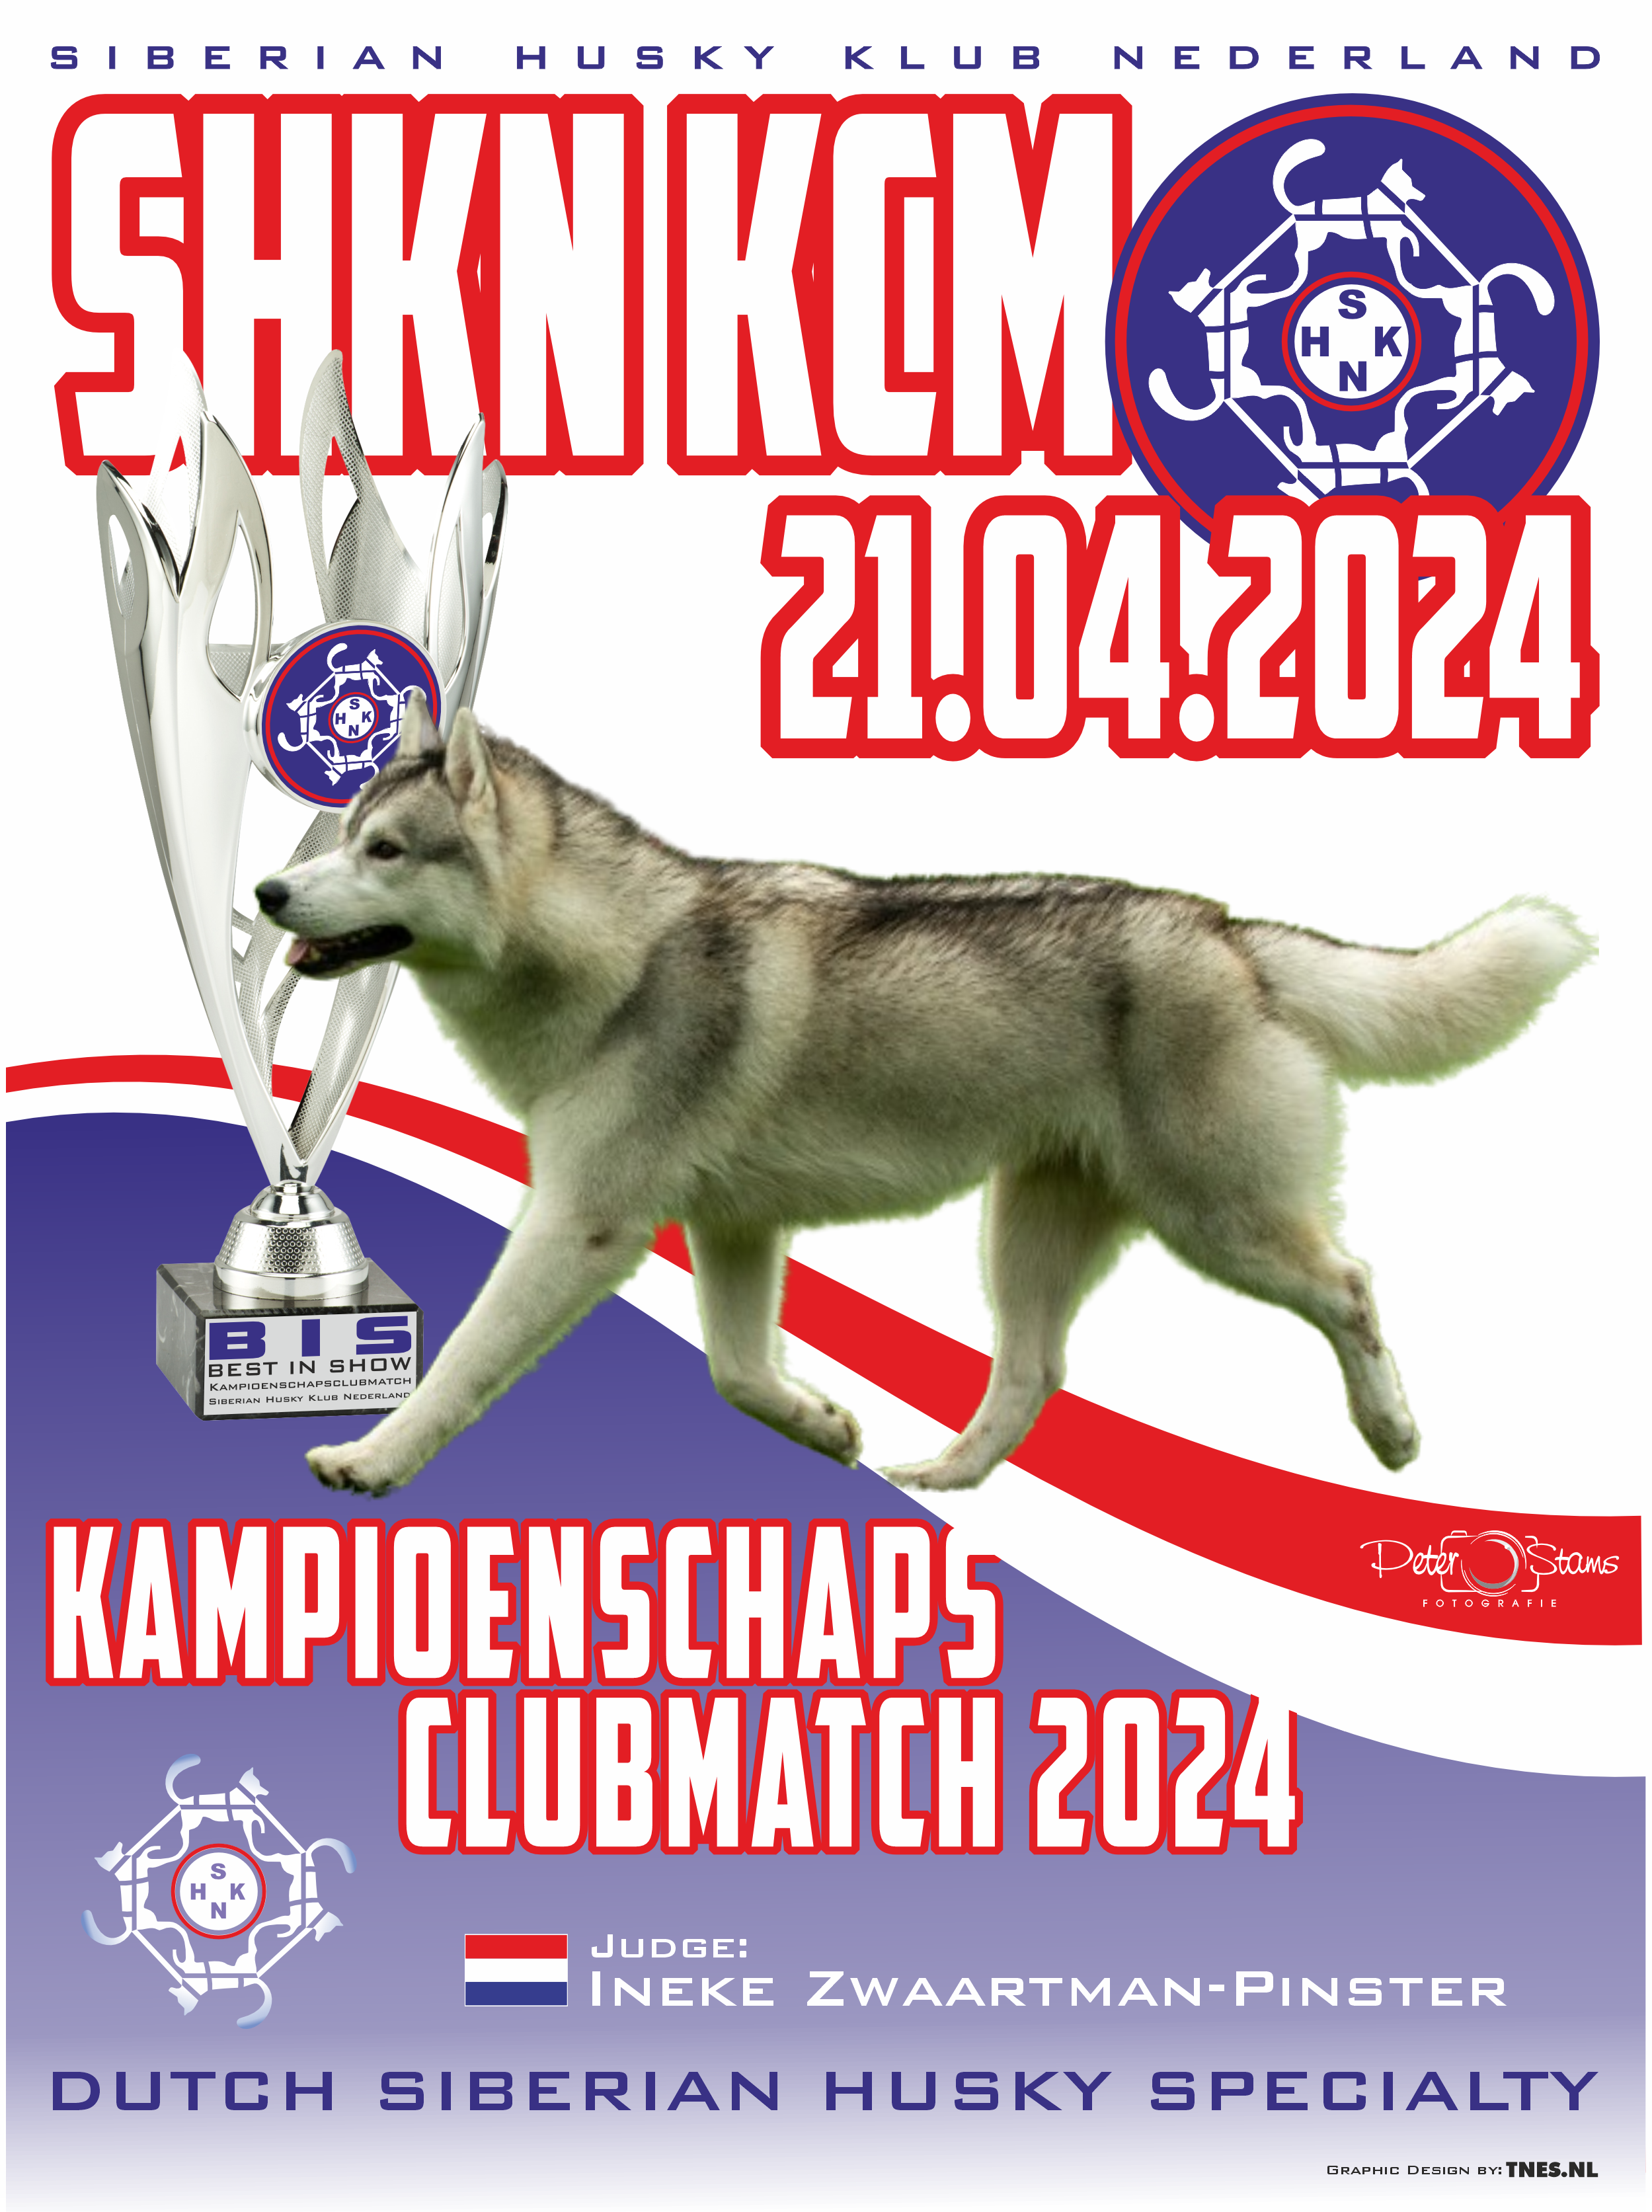 Kampioenschapsclubmatch (KCM) 2024